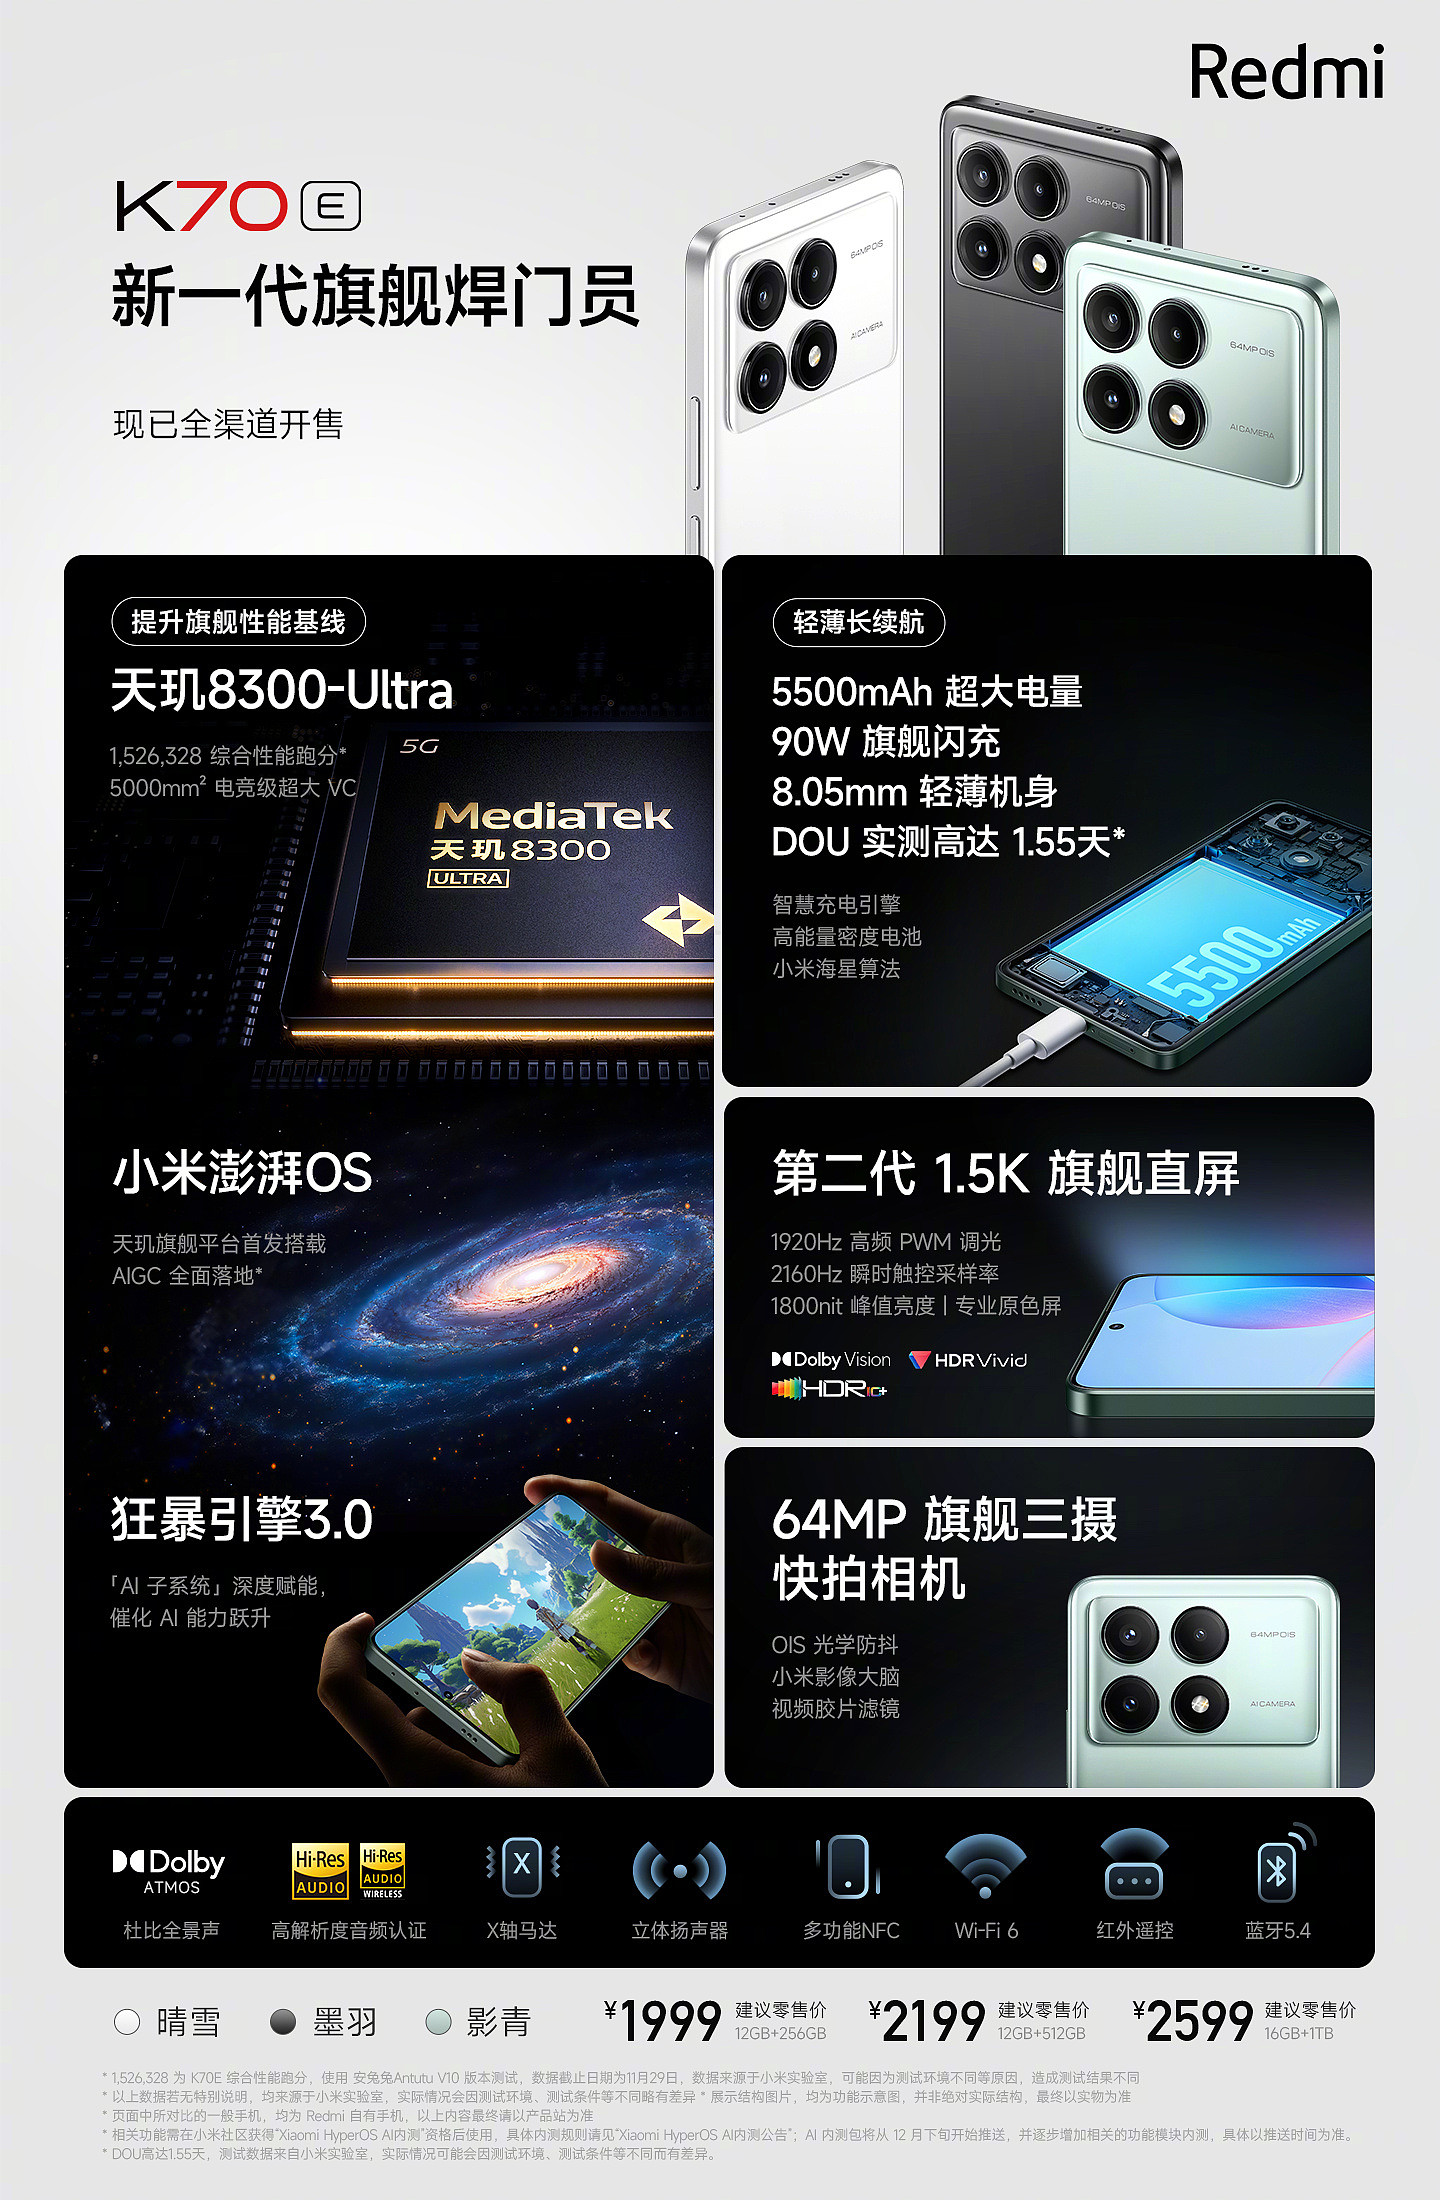 开售五天立减 100 元：Redmi K70E 手机 512G 版 2069 元 6 期免息 - 6